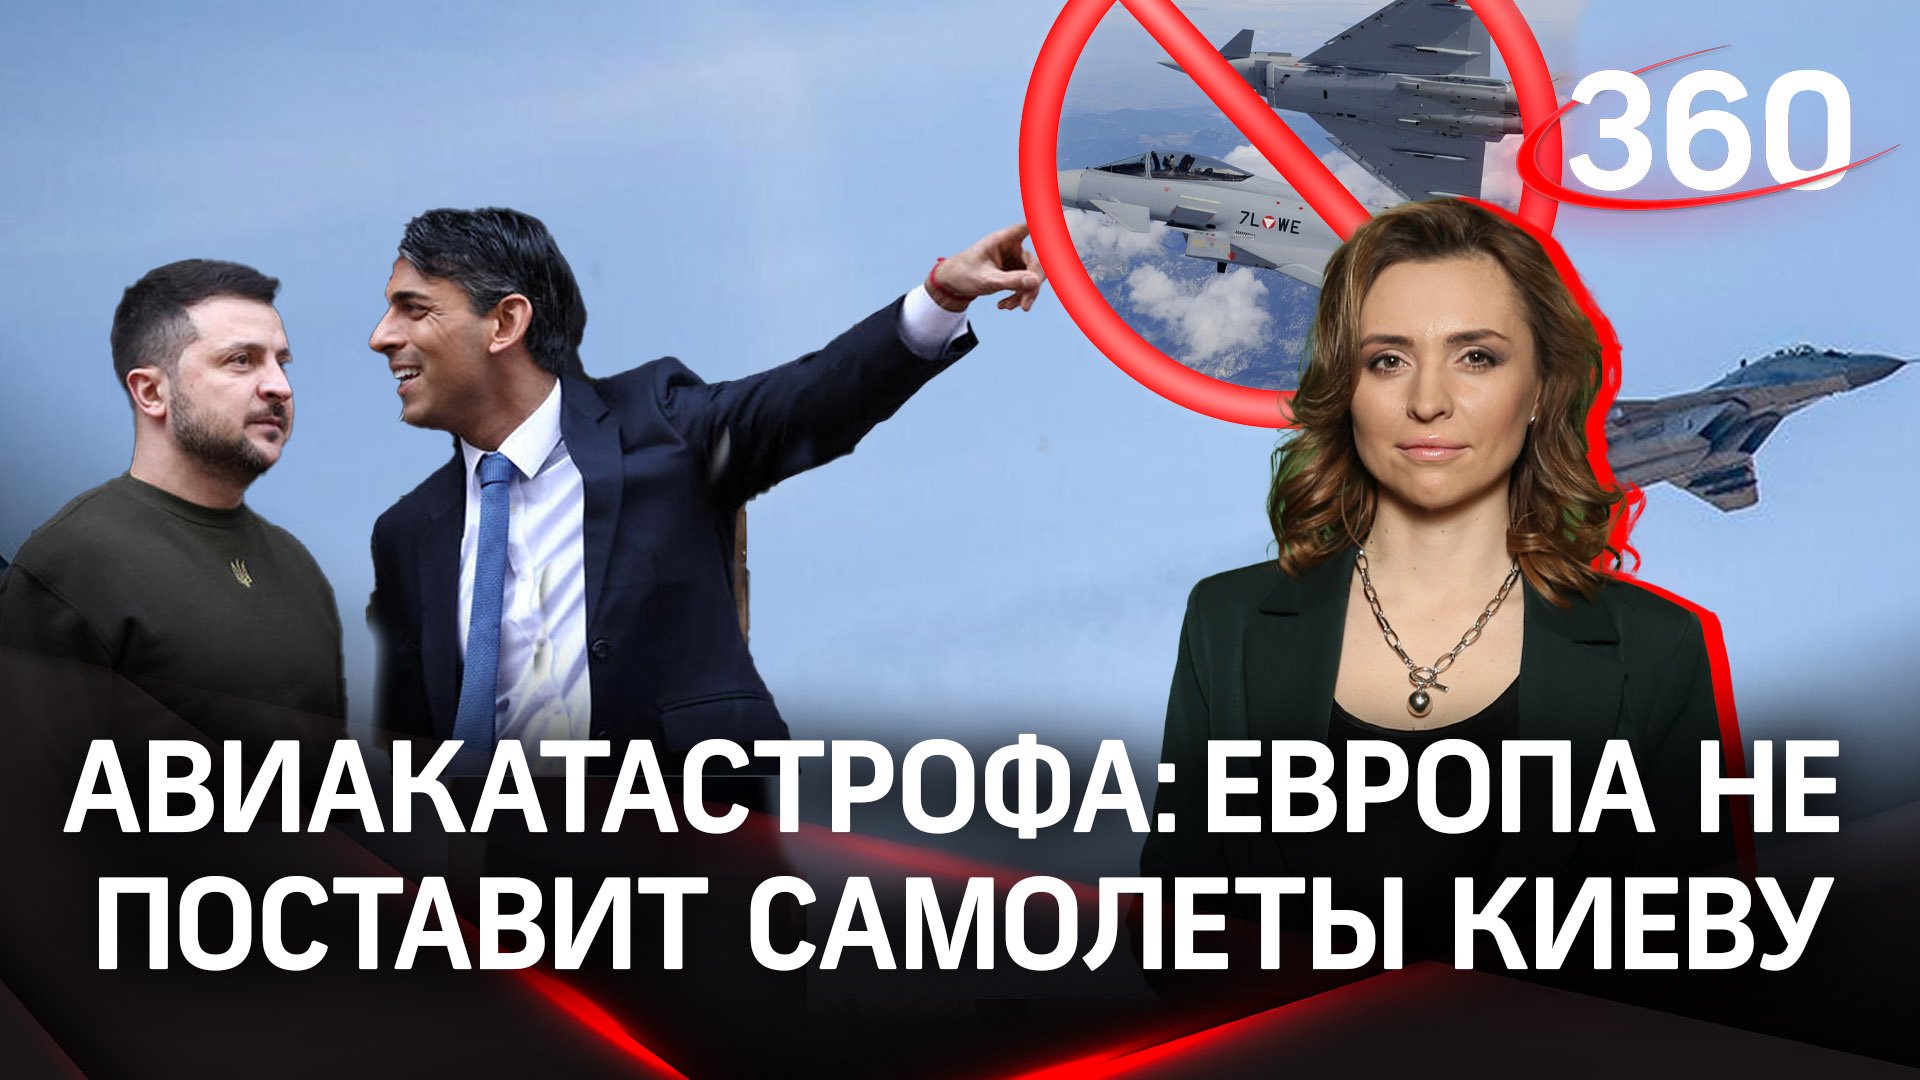 Авиакатастрофа: Европа отказалась поставить самолеты на Украину | Екатерина Малашенко